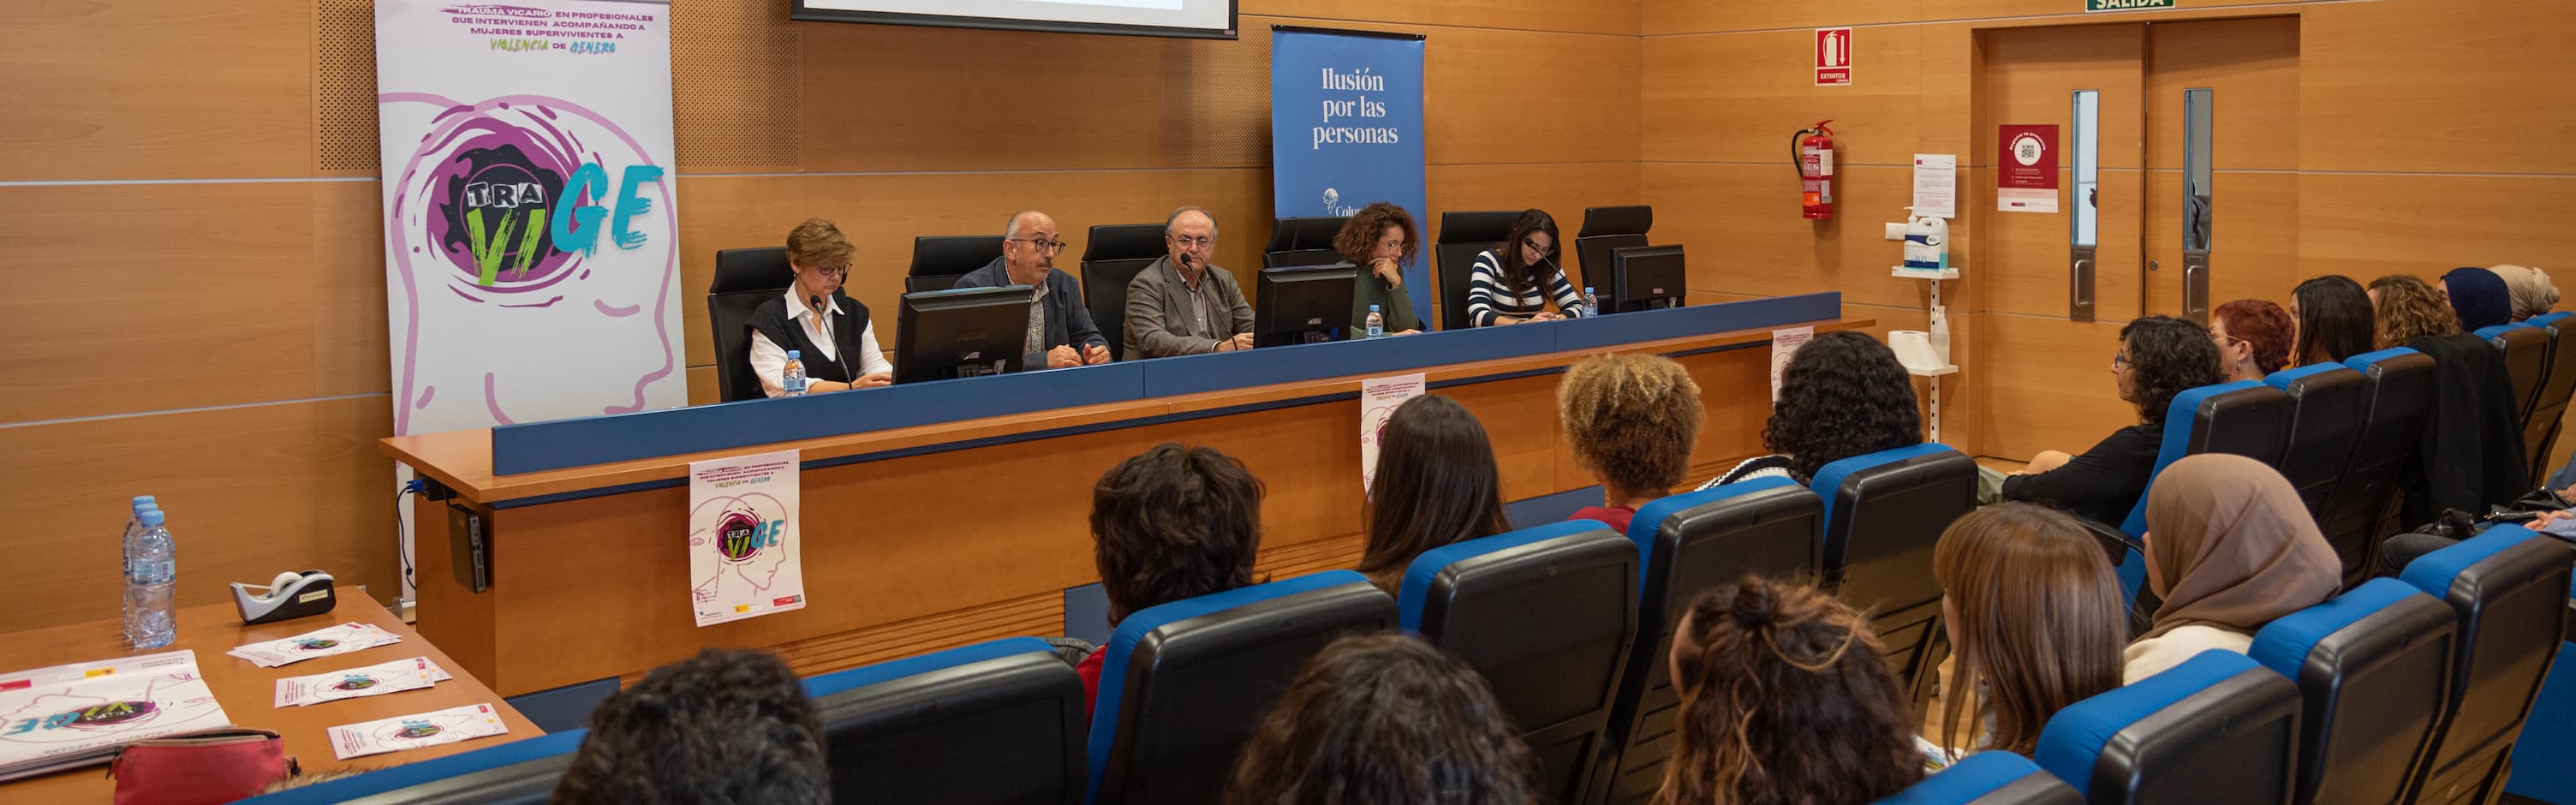 La Universidad de Murcia participa en un proyecto para evaluar el impacto emocional en profesionales que trabajan en violencia de género